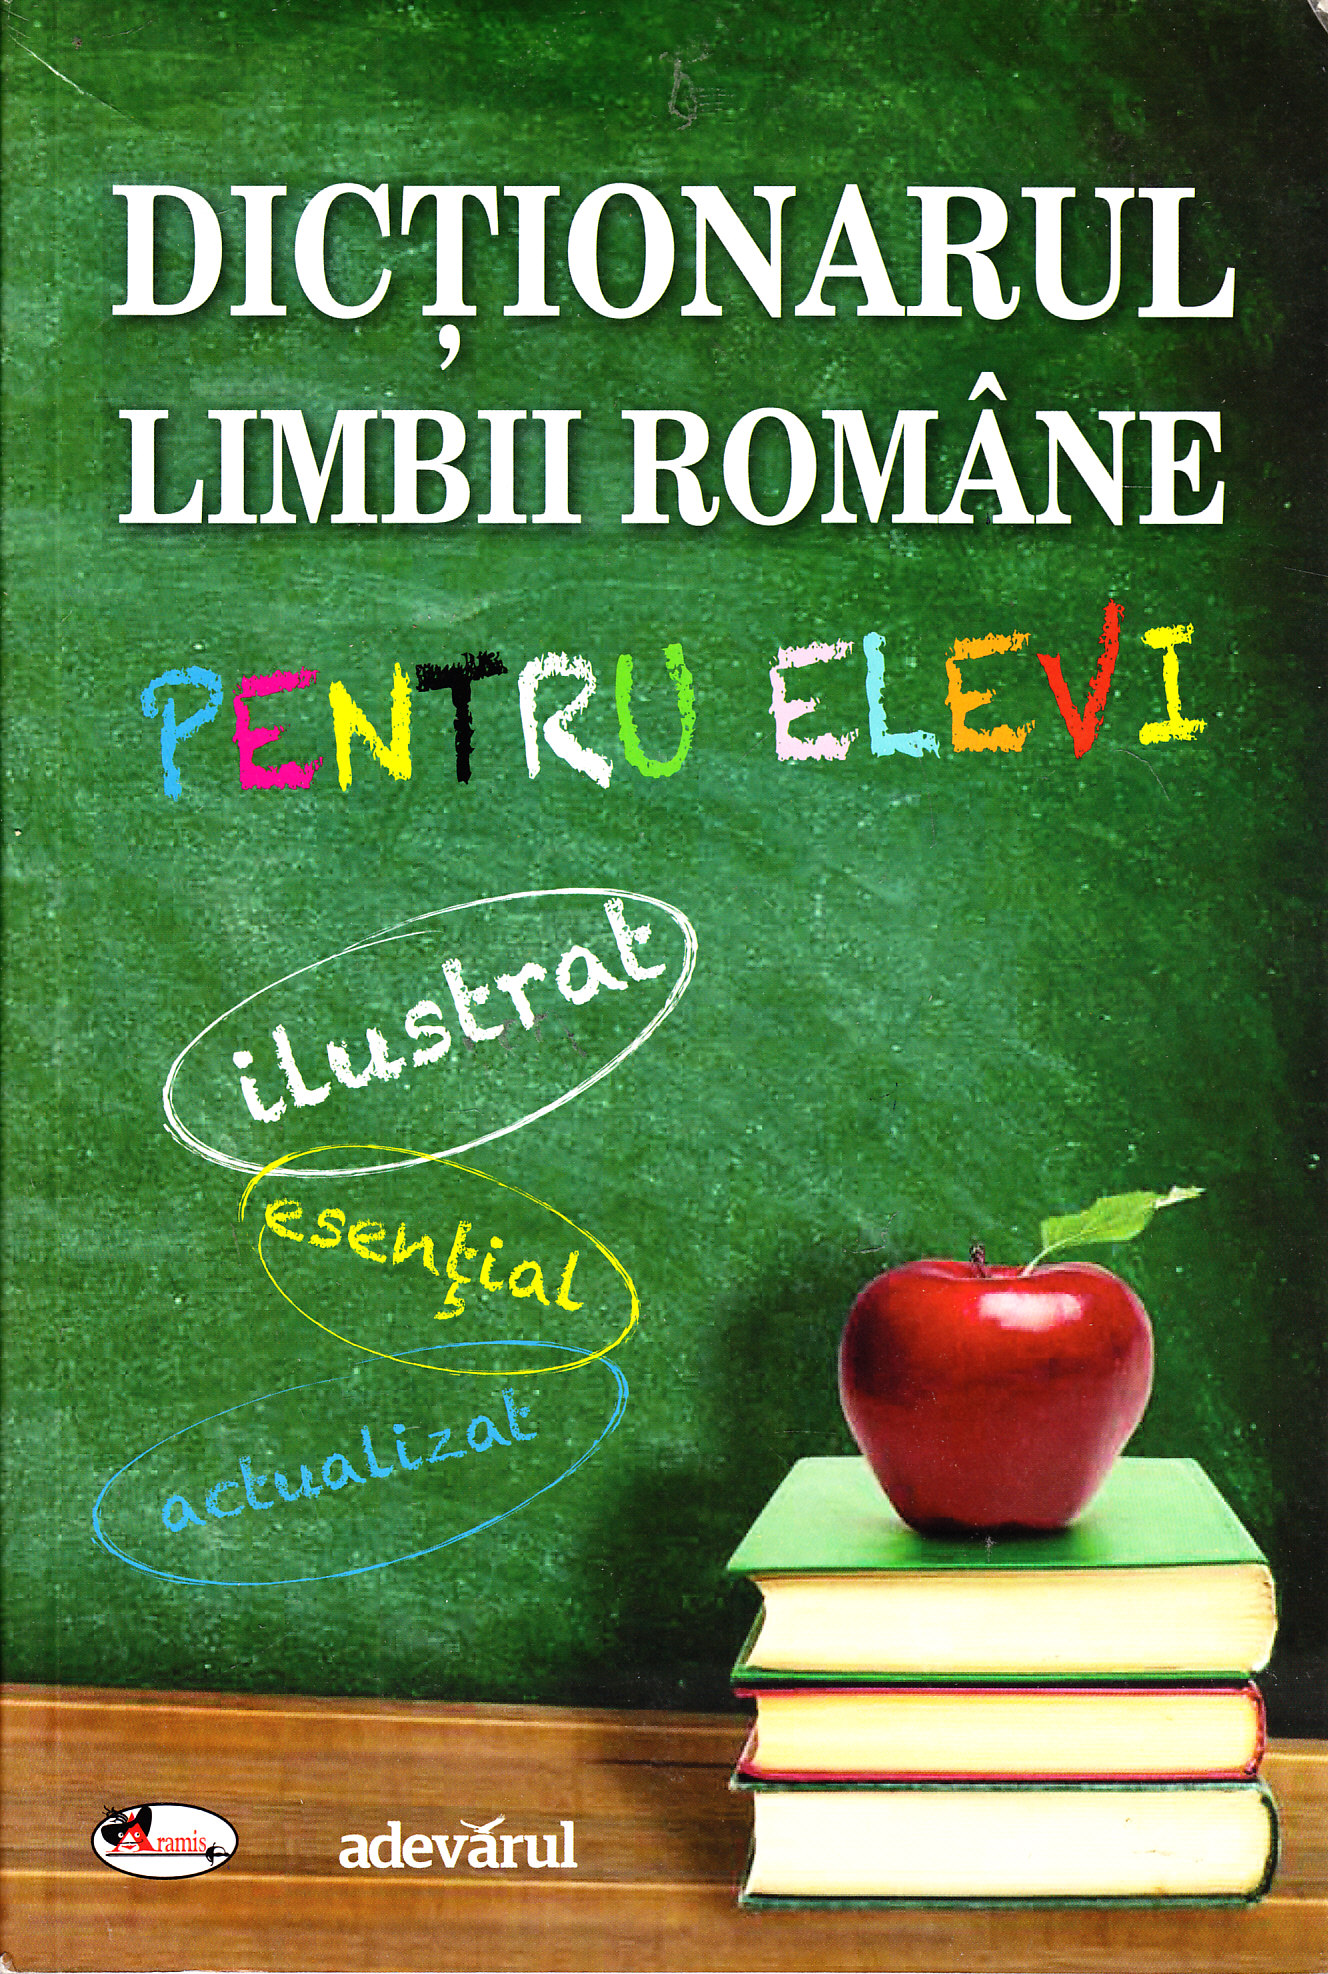 Dictionarul limbii romane pentru clasa 1-4